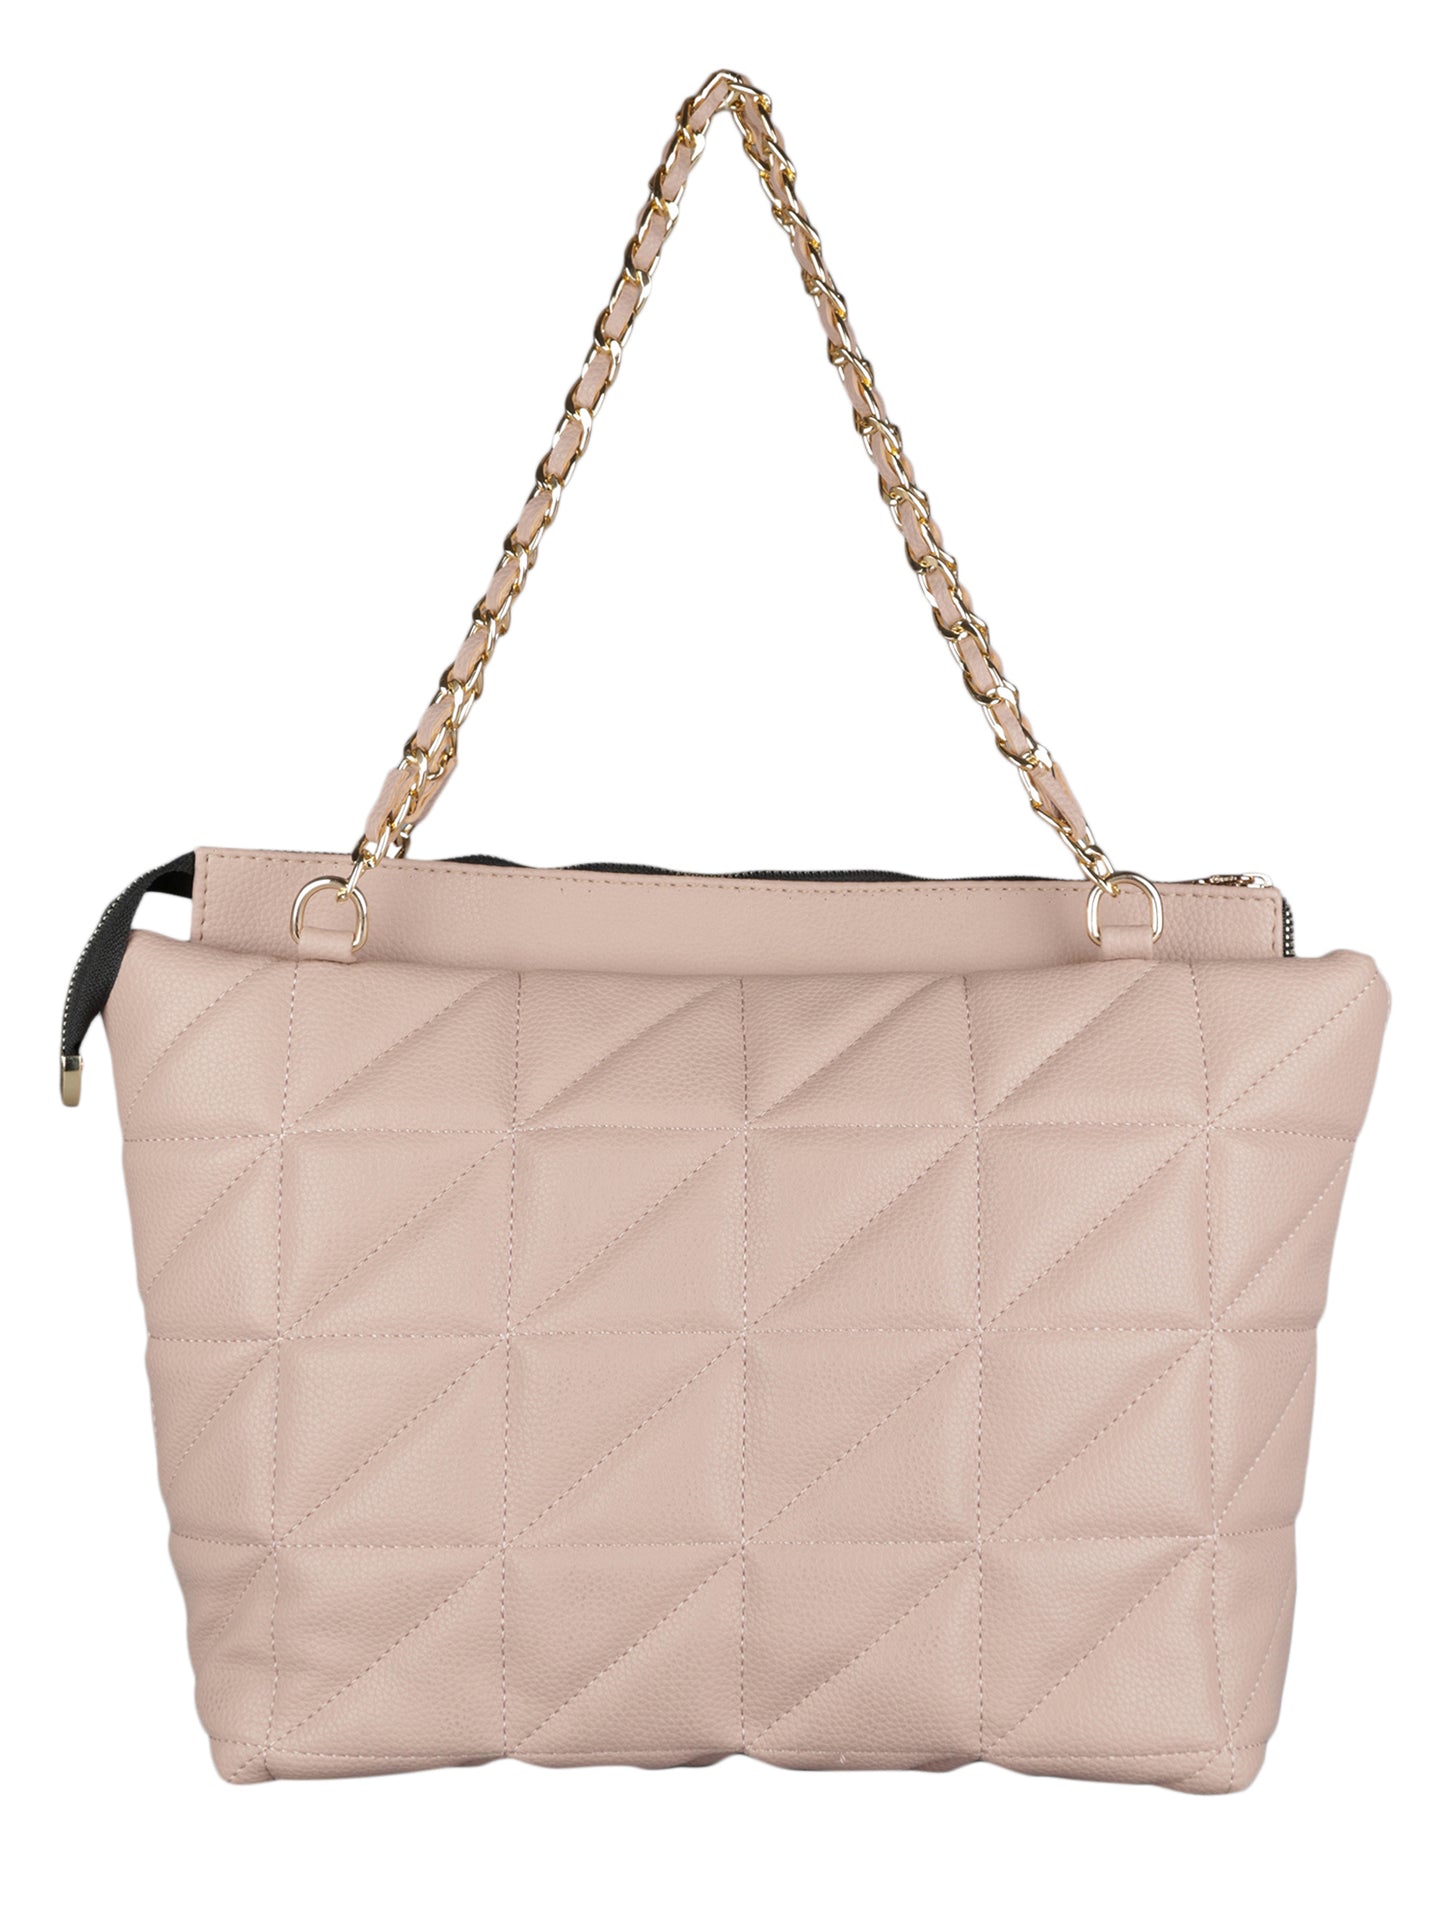 MINI WESST Women's Beige Handbags(MWHB057BE)